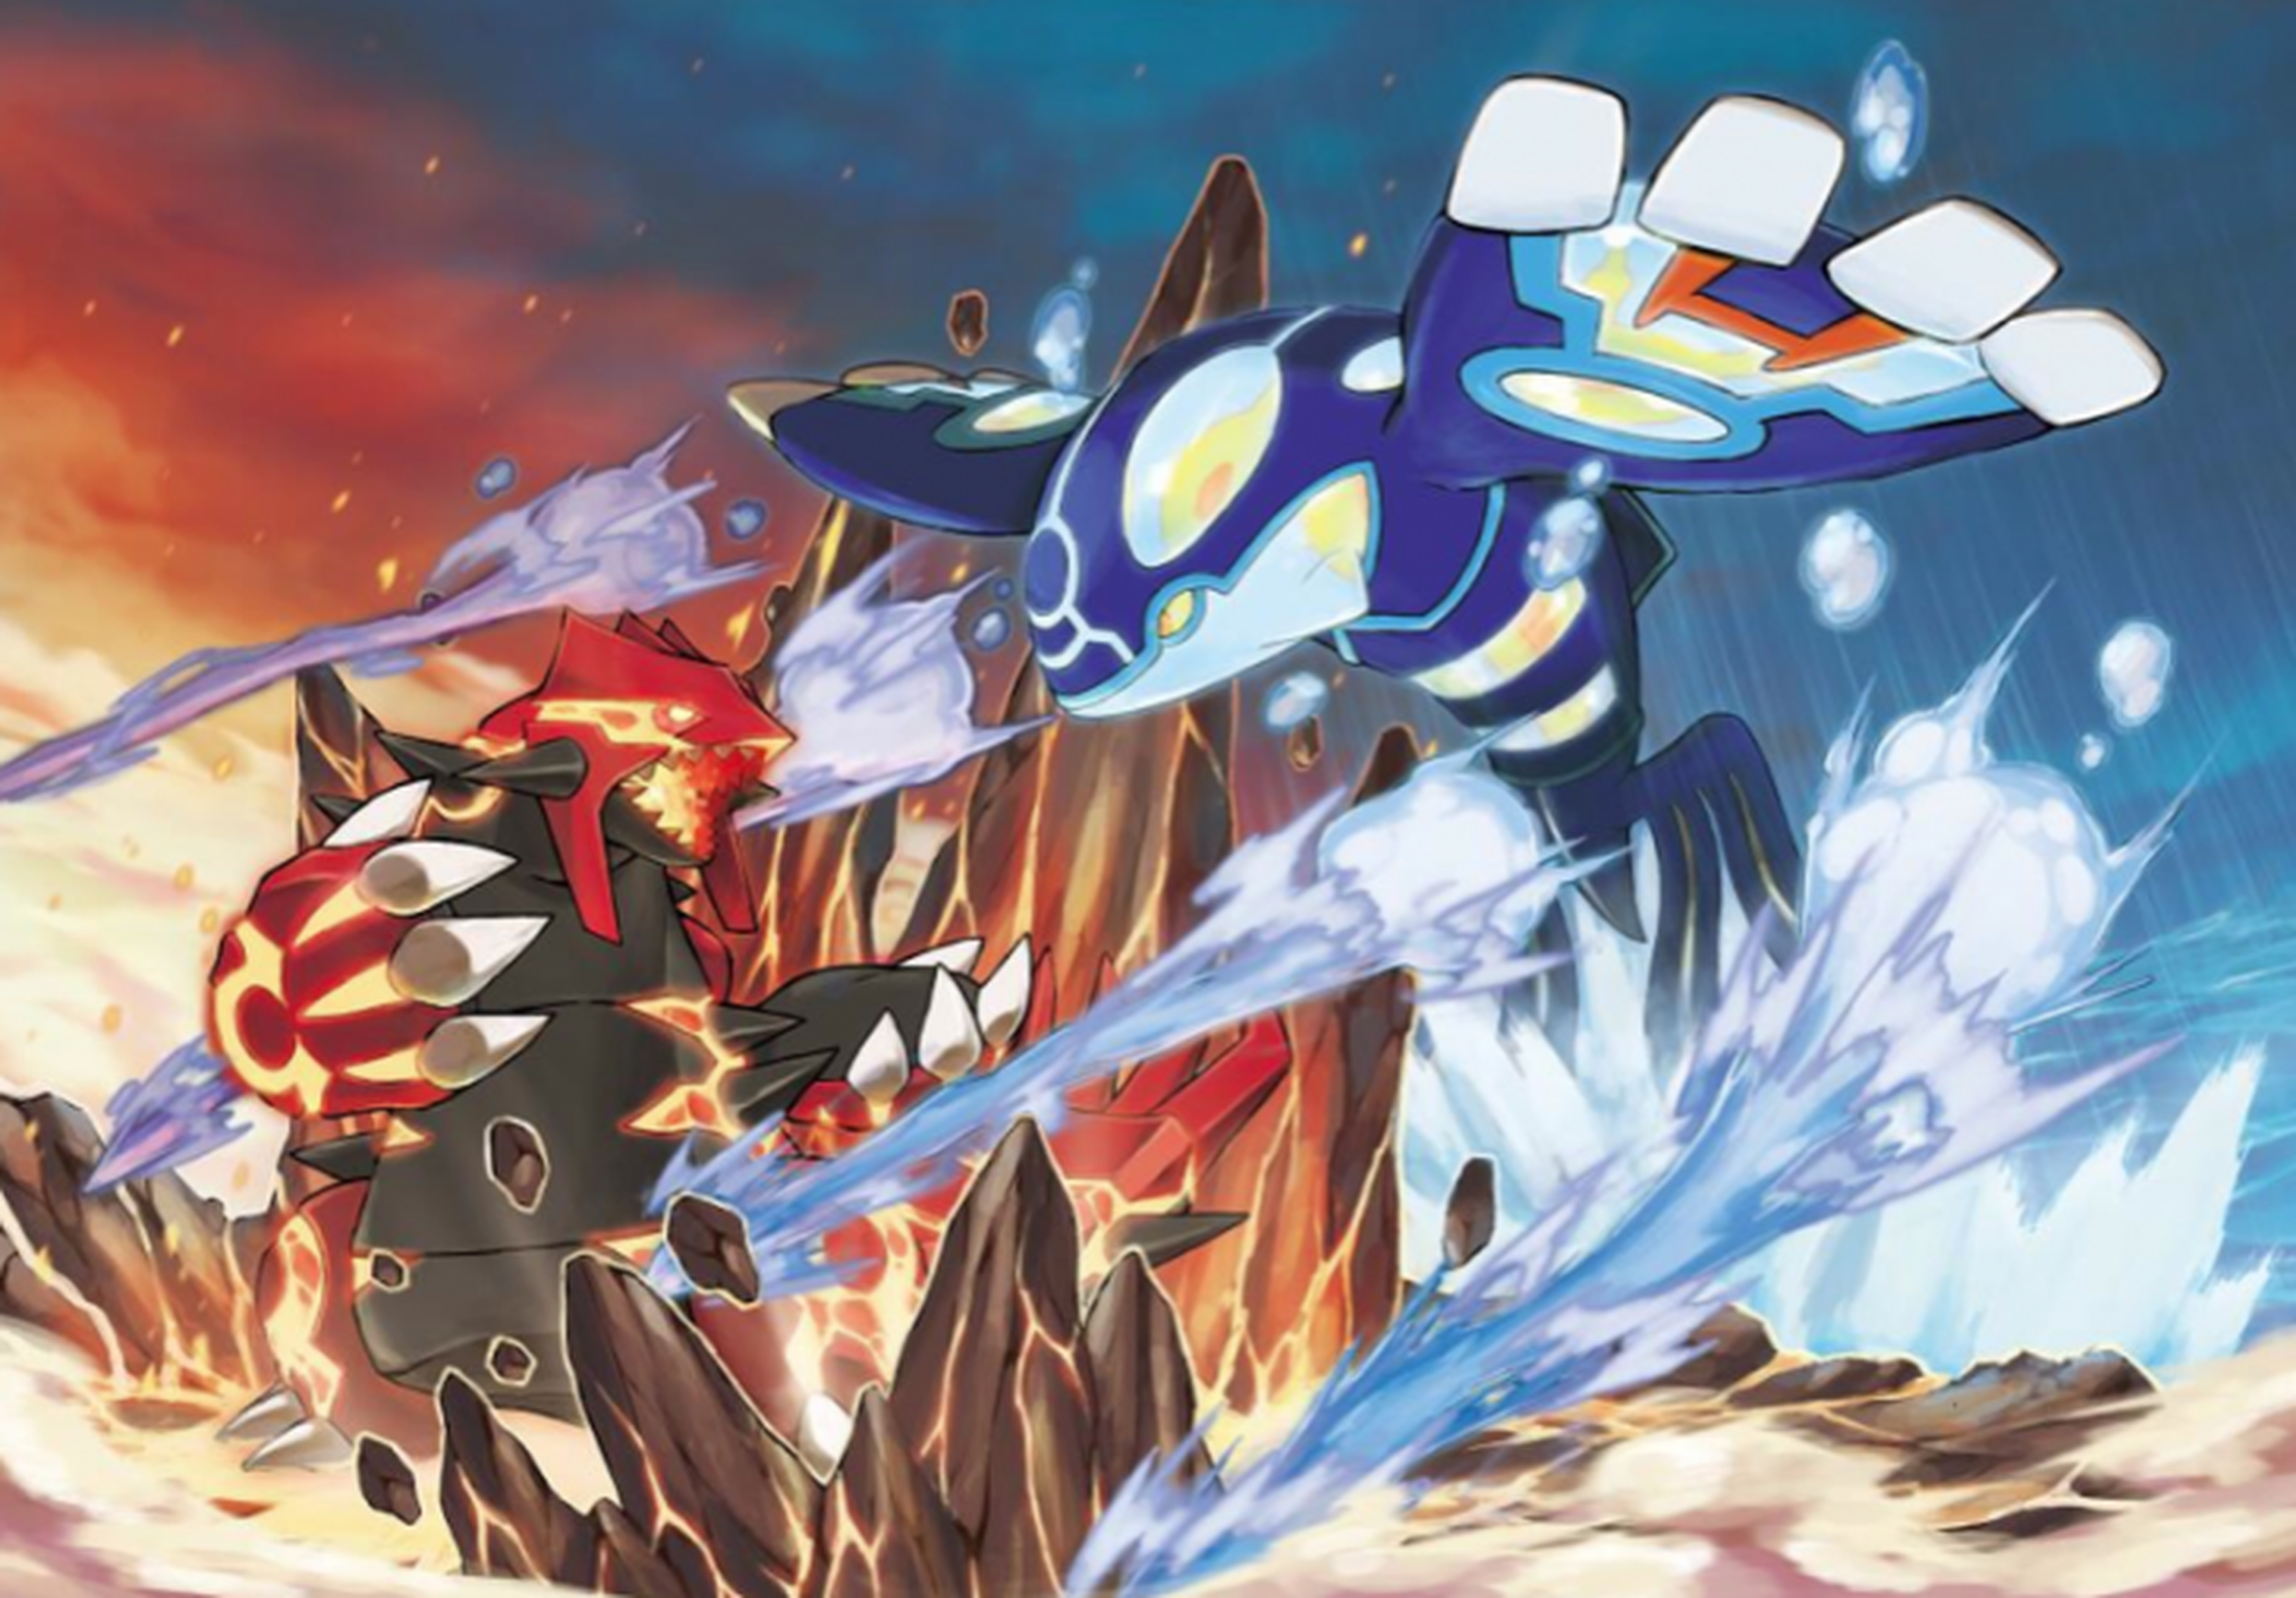 Los puntos clave de la demo de Pokémon Rubí Omega y Pokémon Zafiro Alfa